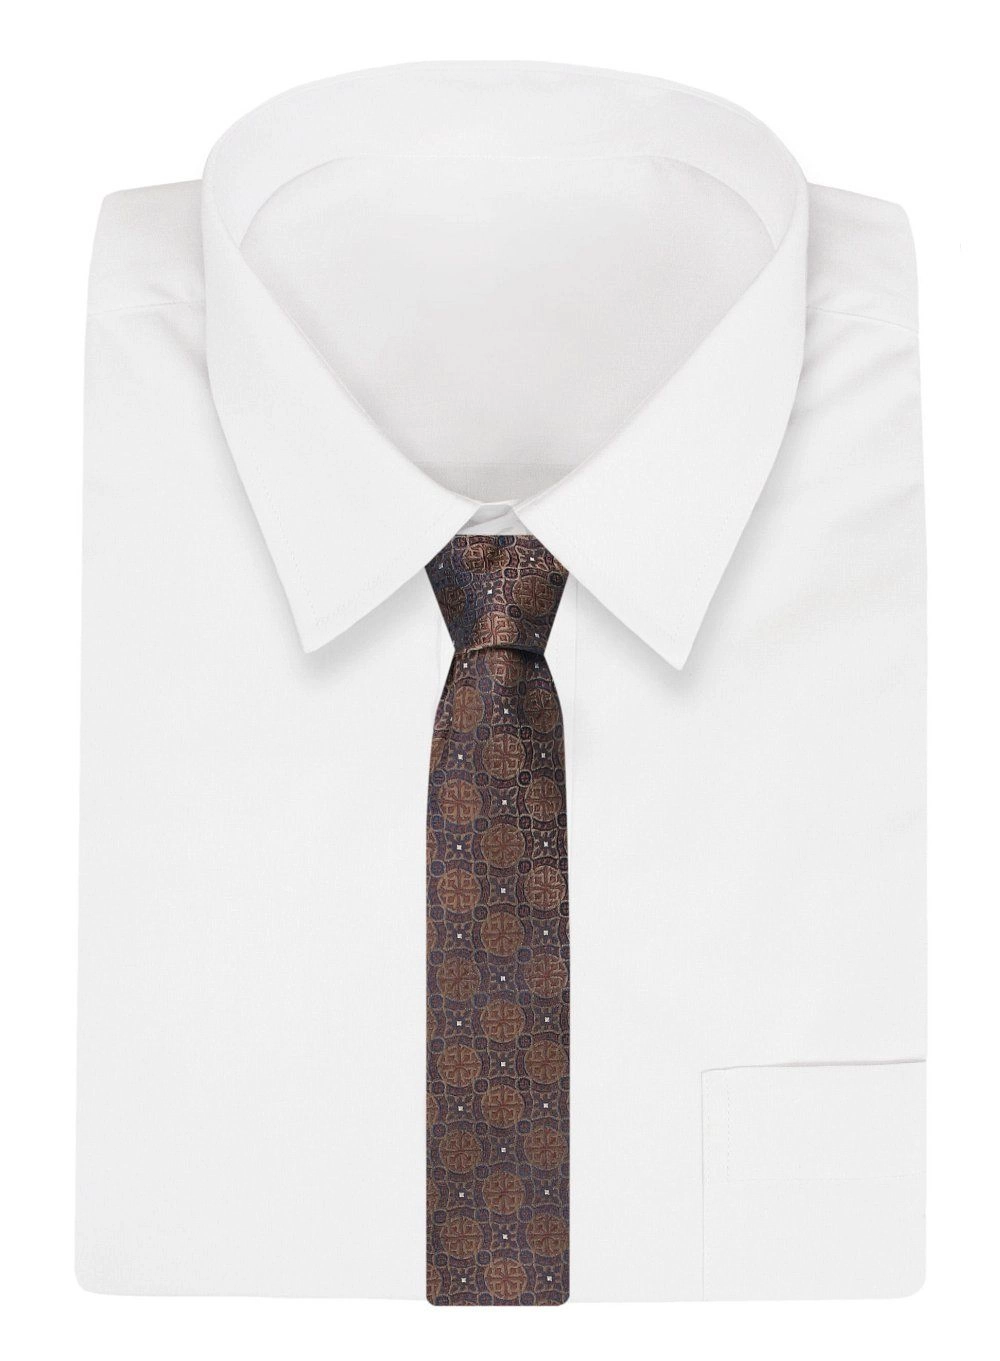 Krawat Klasyczny, Męski, Brązowo-Beżowy, Wzór Geometryczny, Szeroki 8 cm, Elegancki -CHATTIER